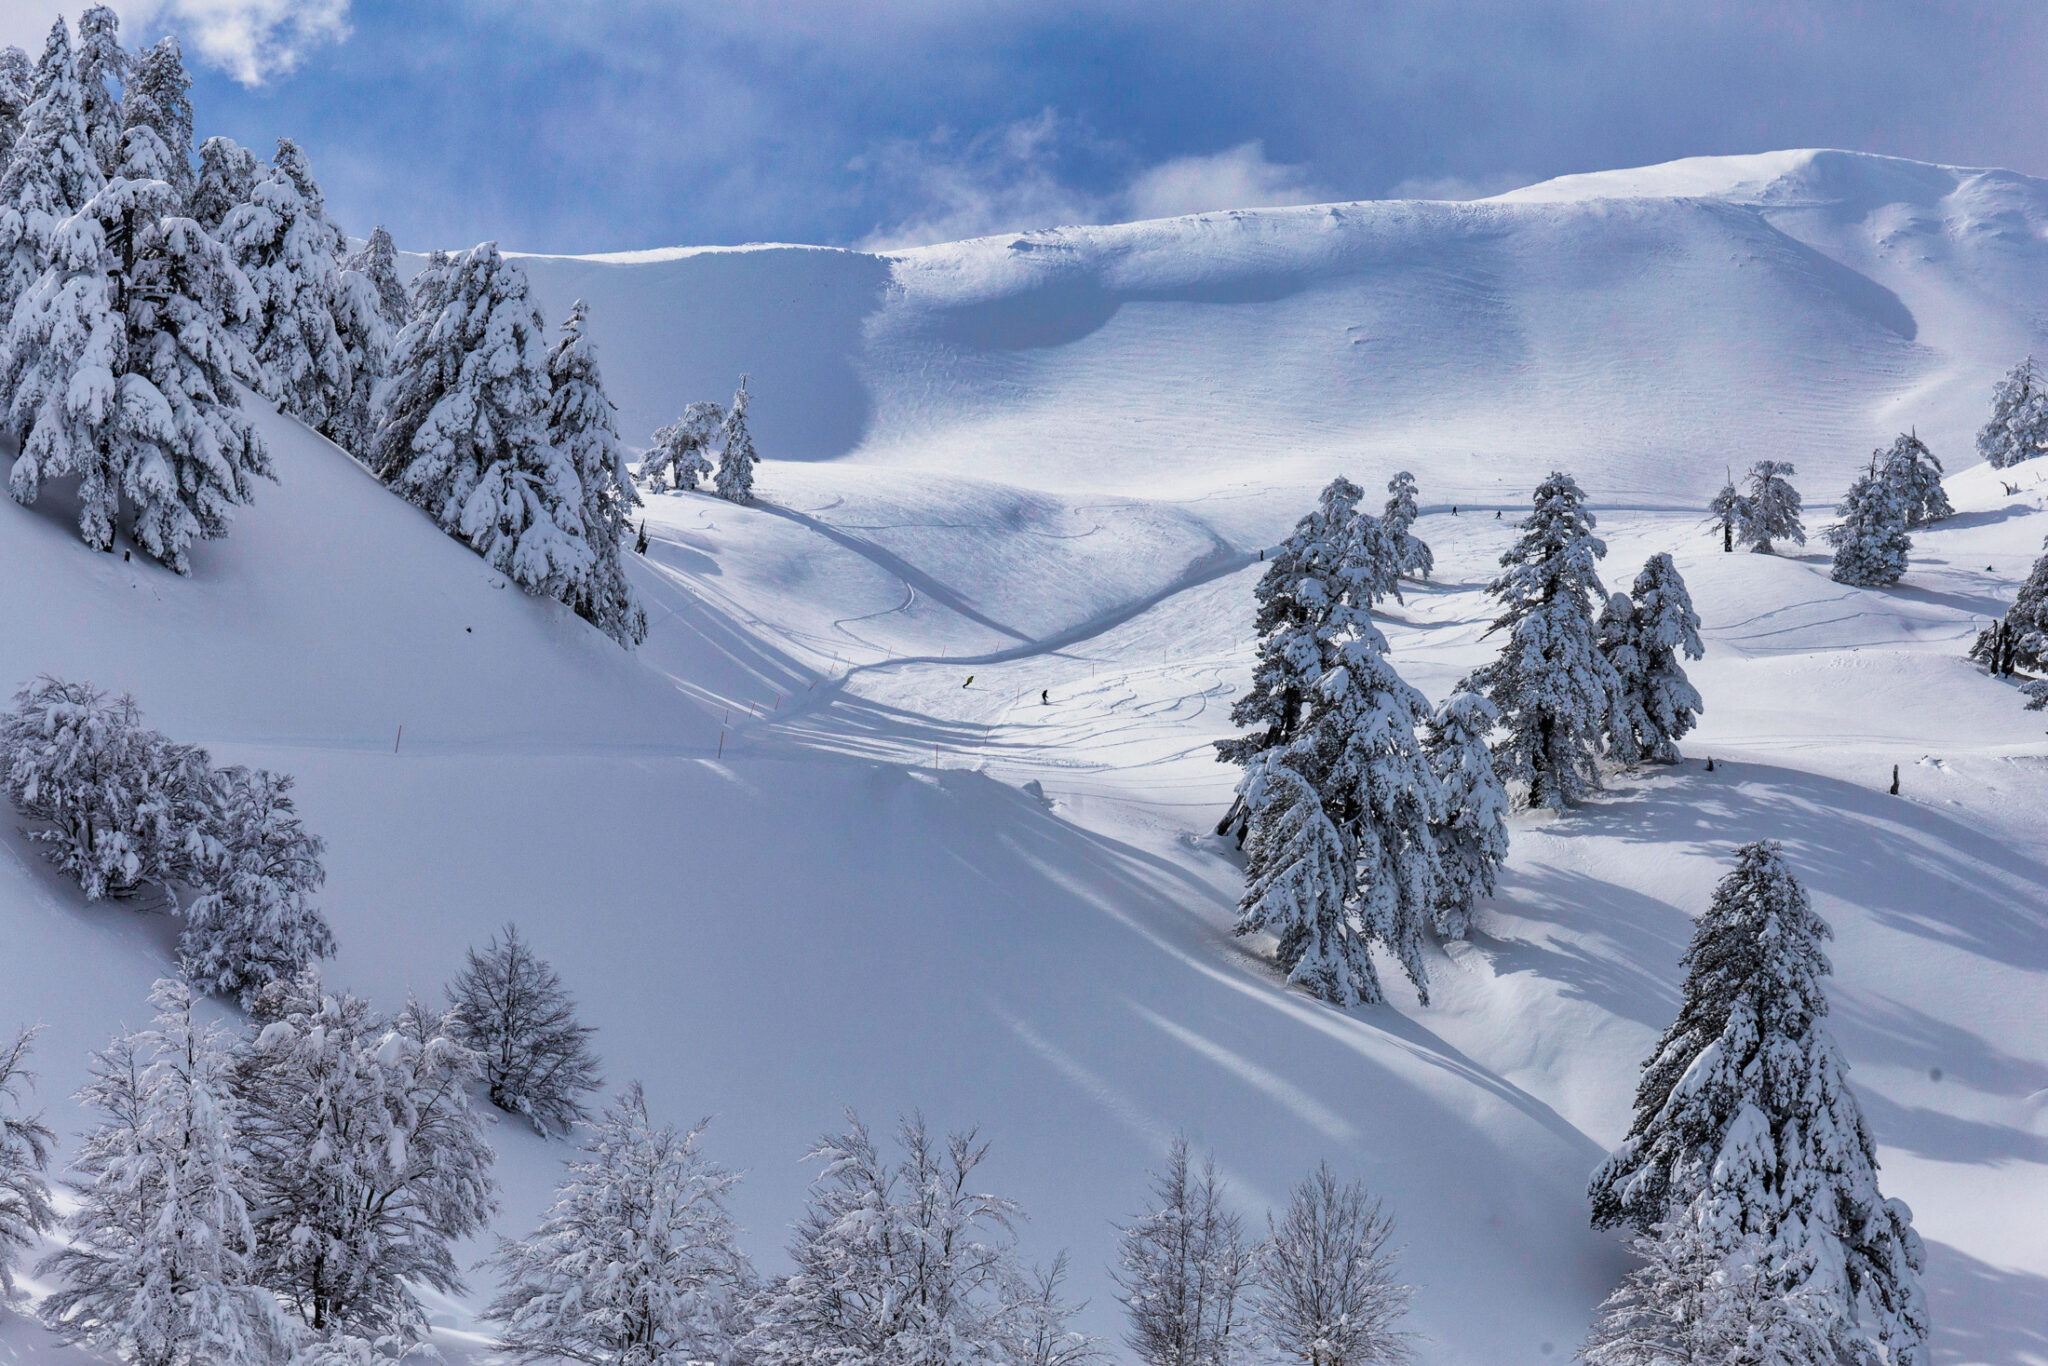 Αποστολή στην Βασιλίτσα: Στο χιονοδρομικό κέντρο με τις θεαματικές πίστες |  travel.gr